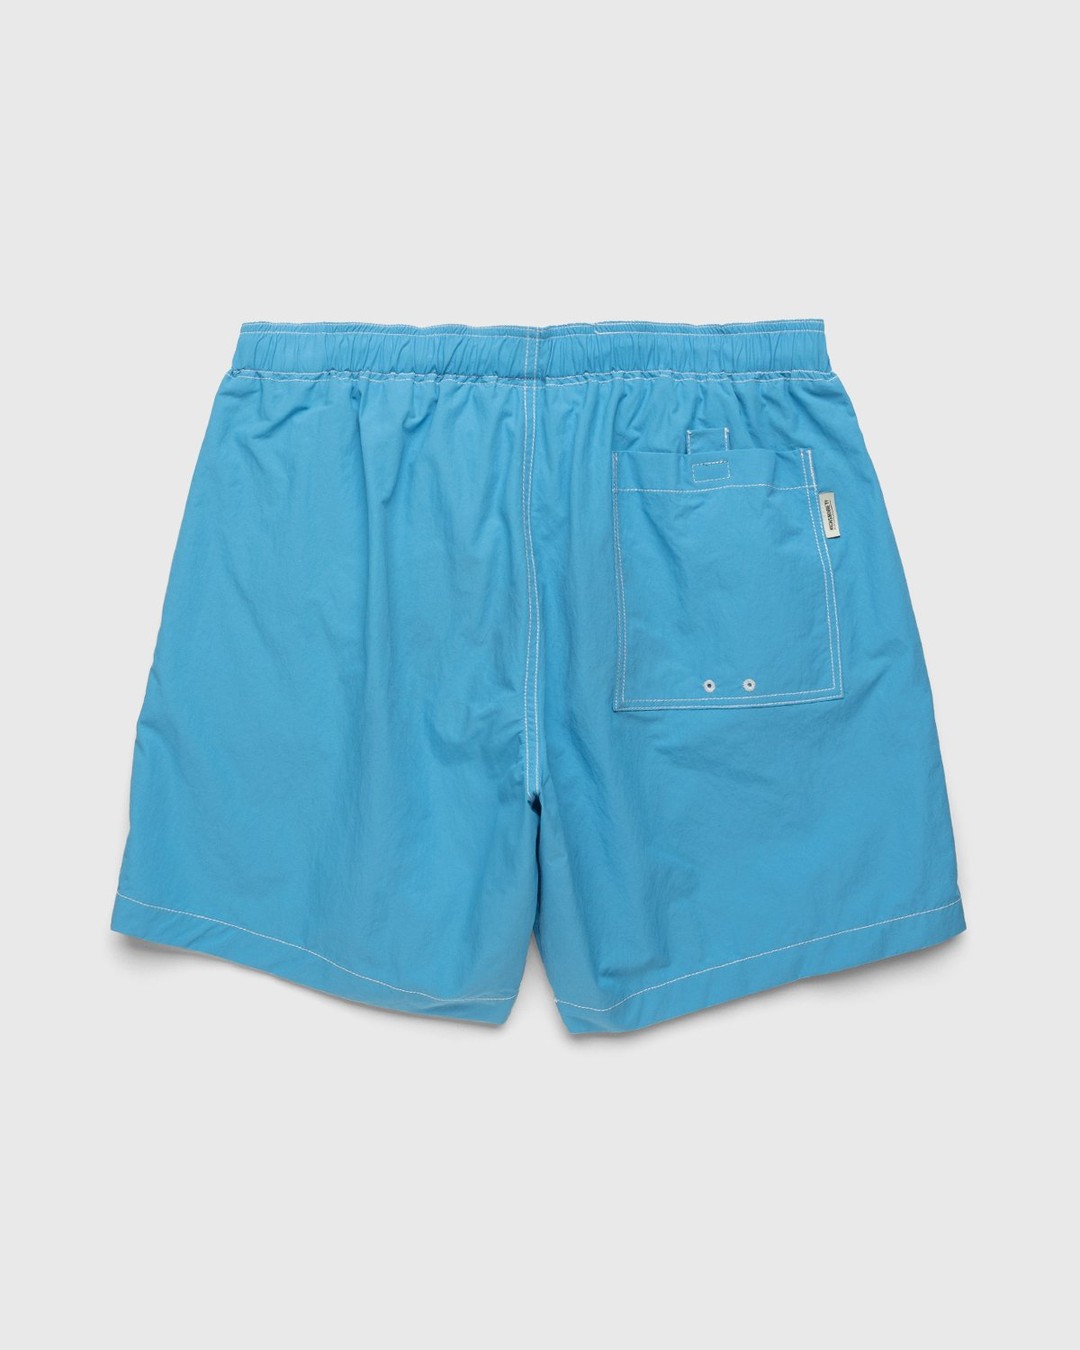 Highsnobiety – Contrast Brushed Nylon Water Shorts Blue - Active Shorts - Blue - Image 2